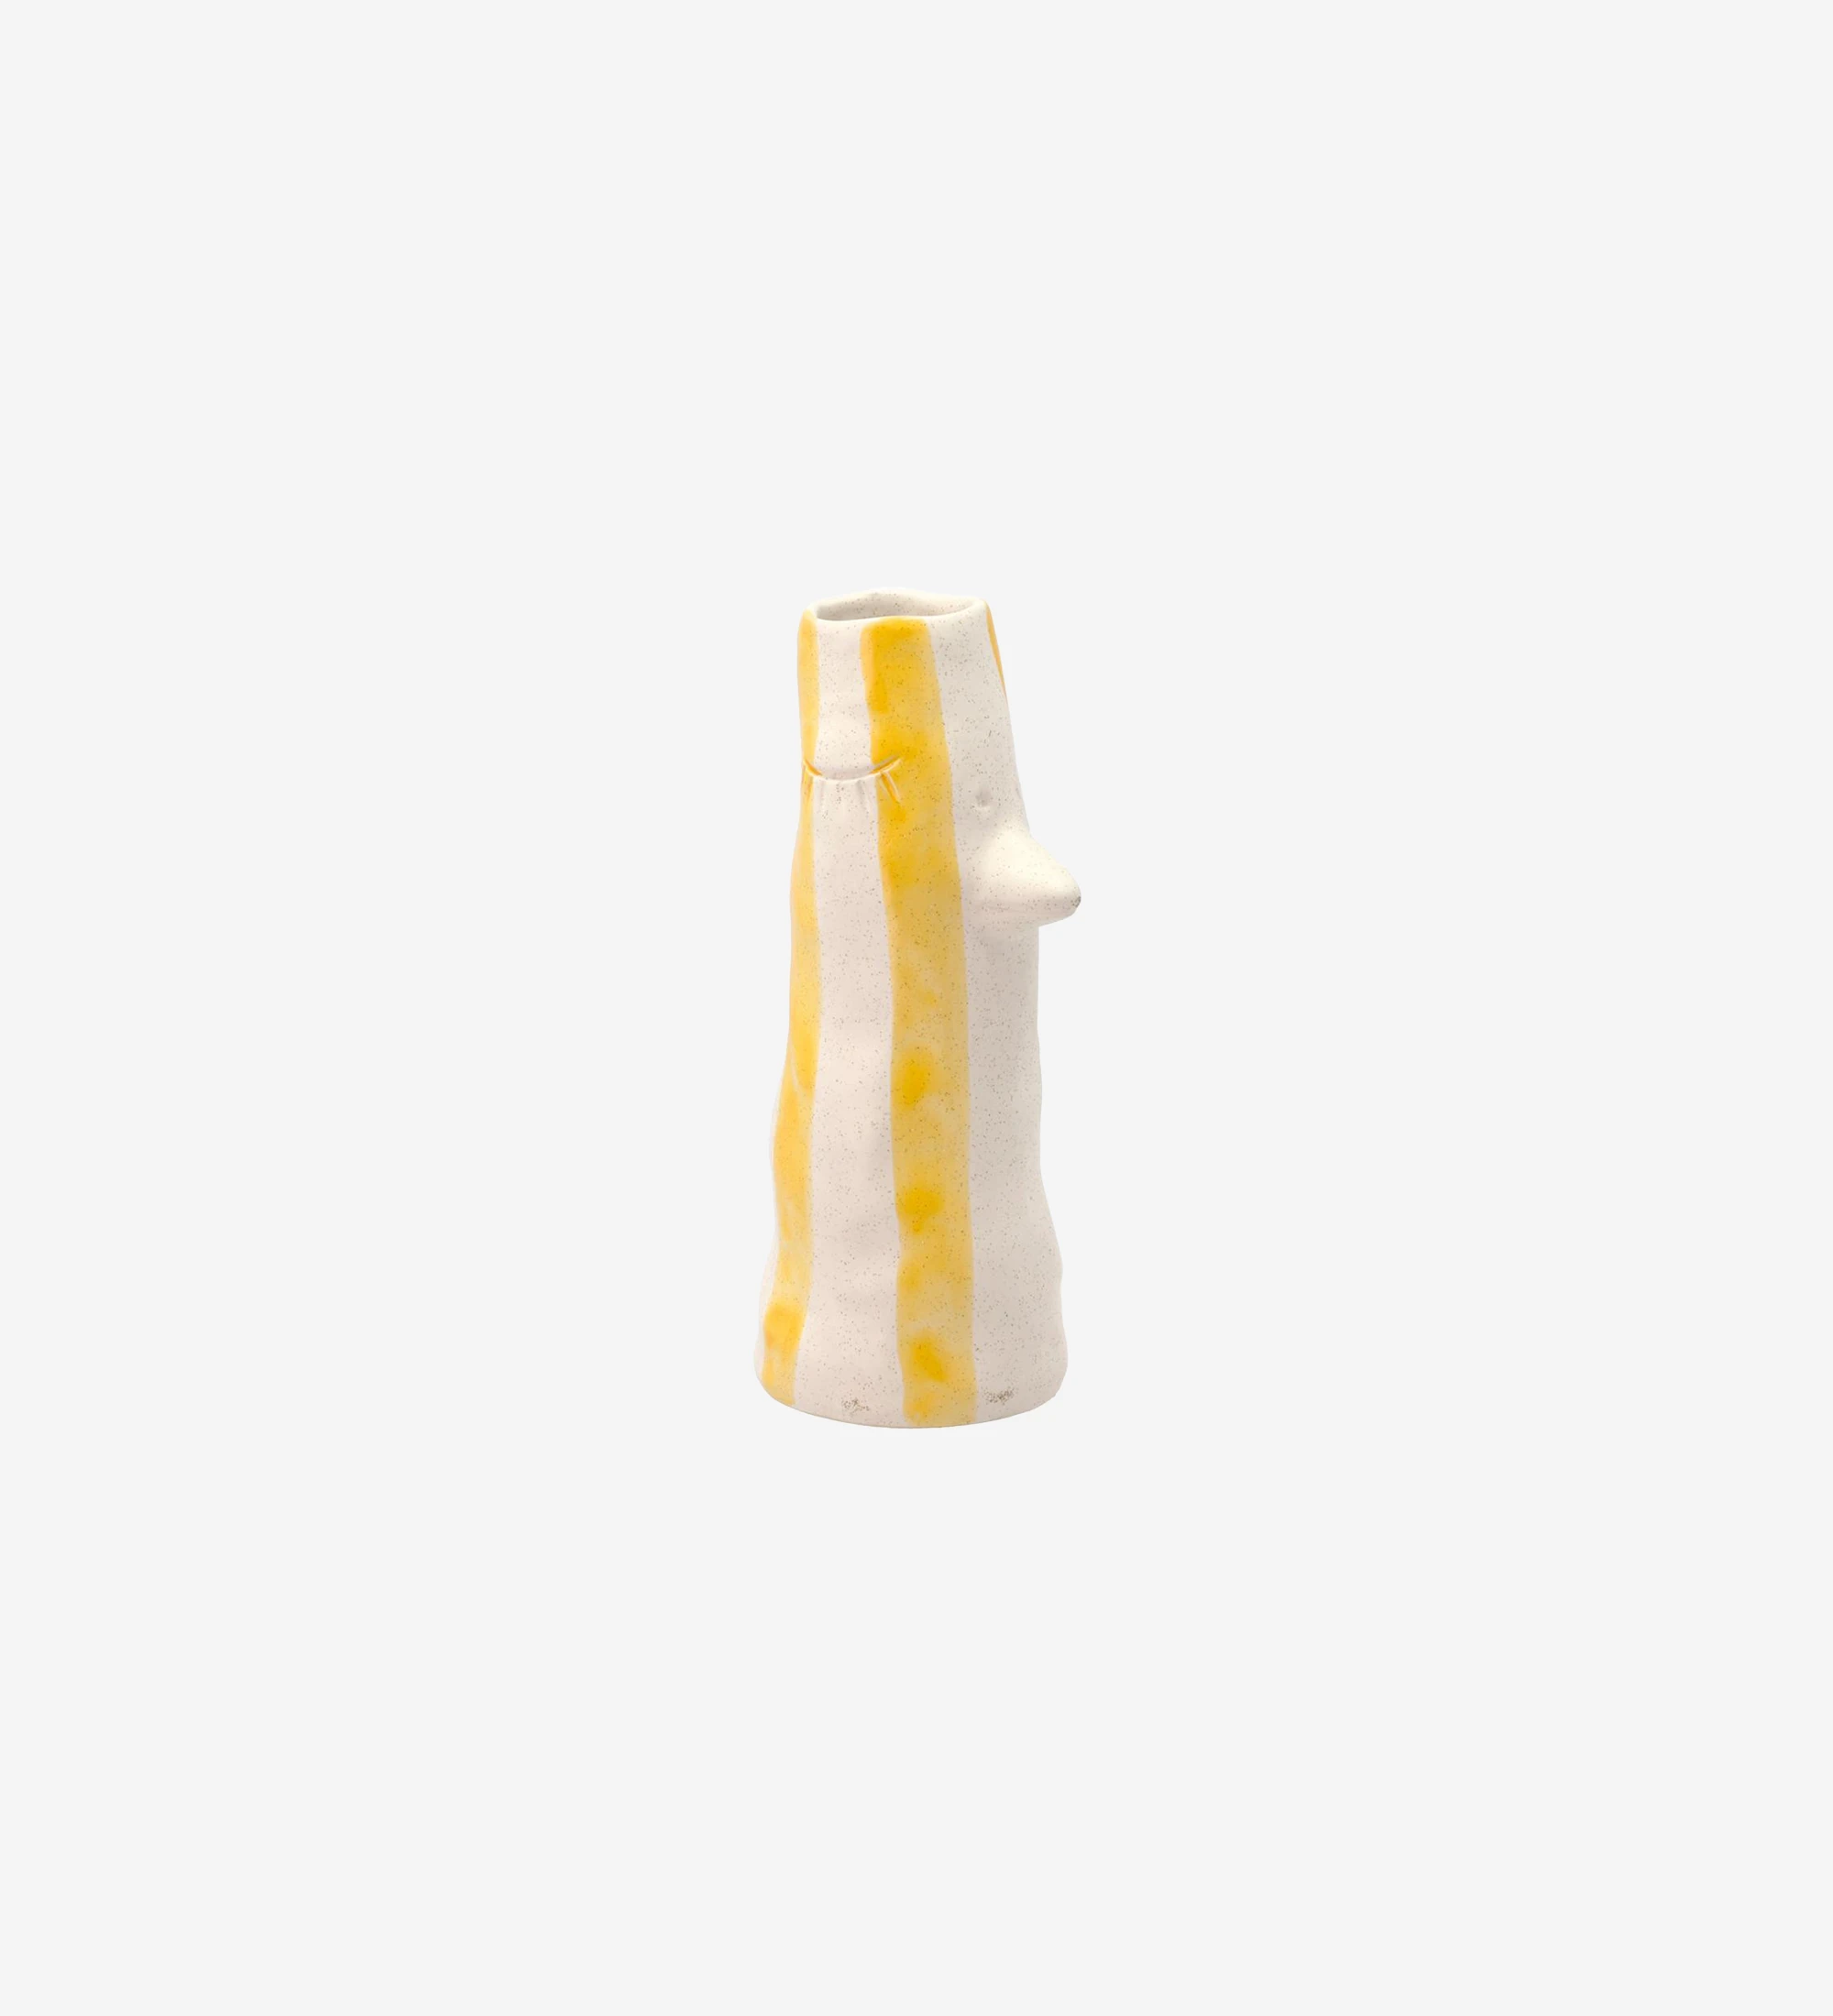 Vase à bec verseur et cils en grès, décoré de rayures jaunes peintes à la main.